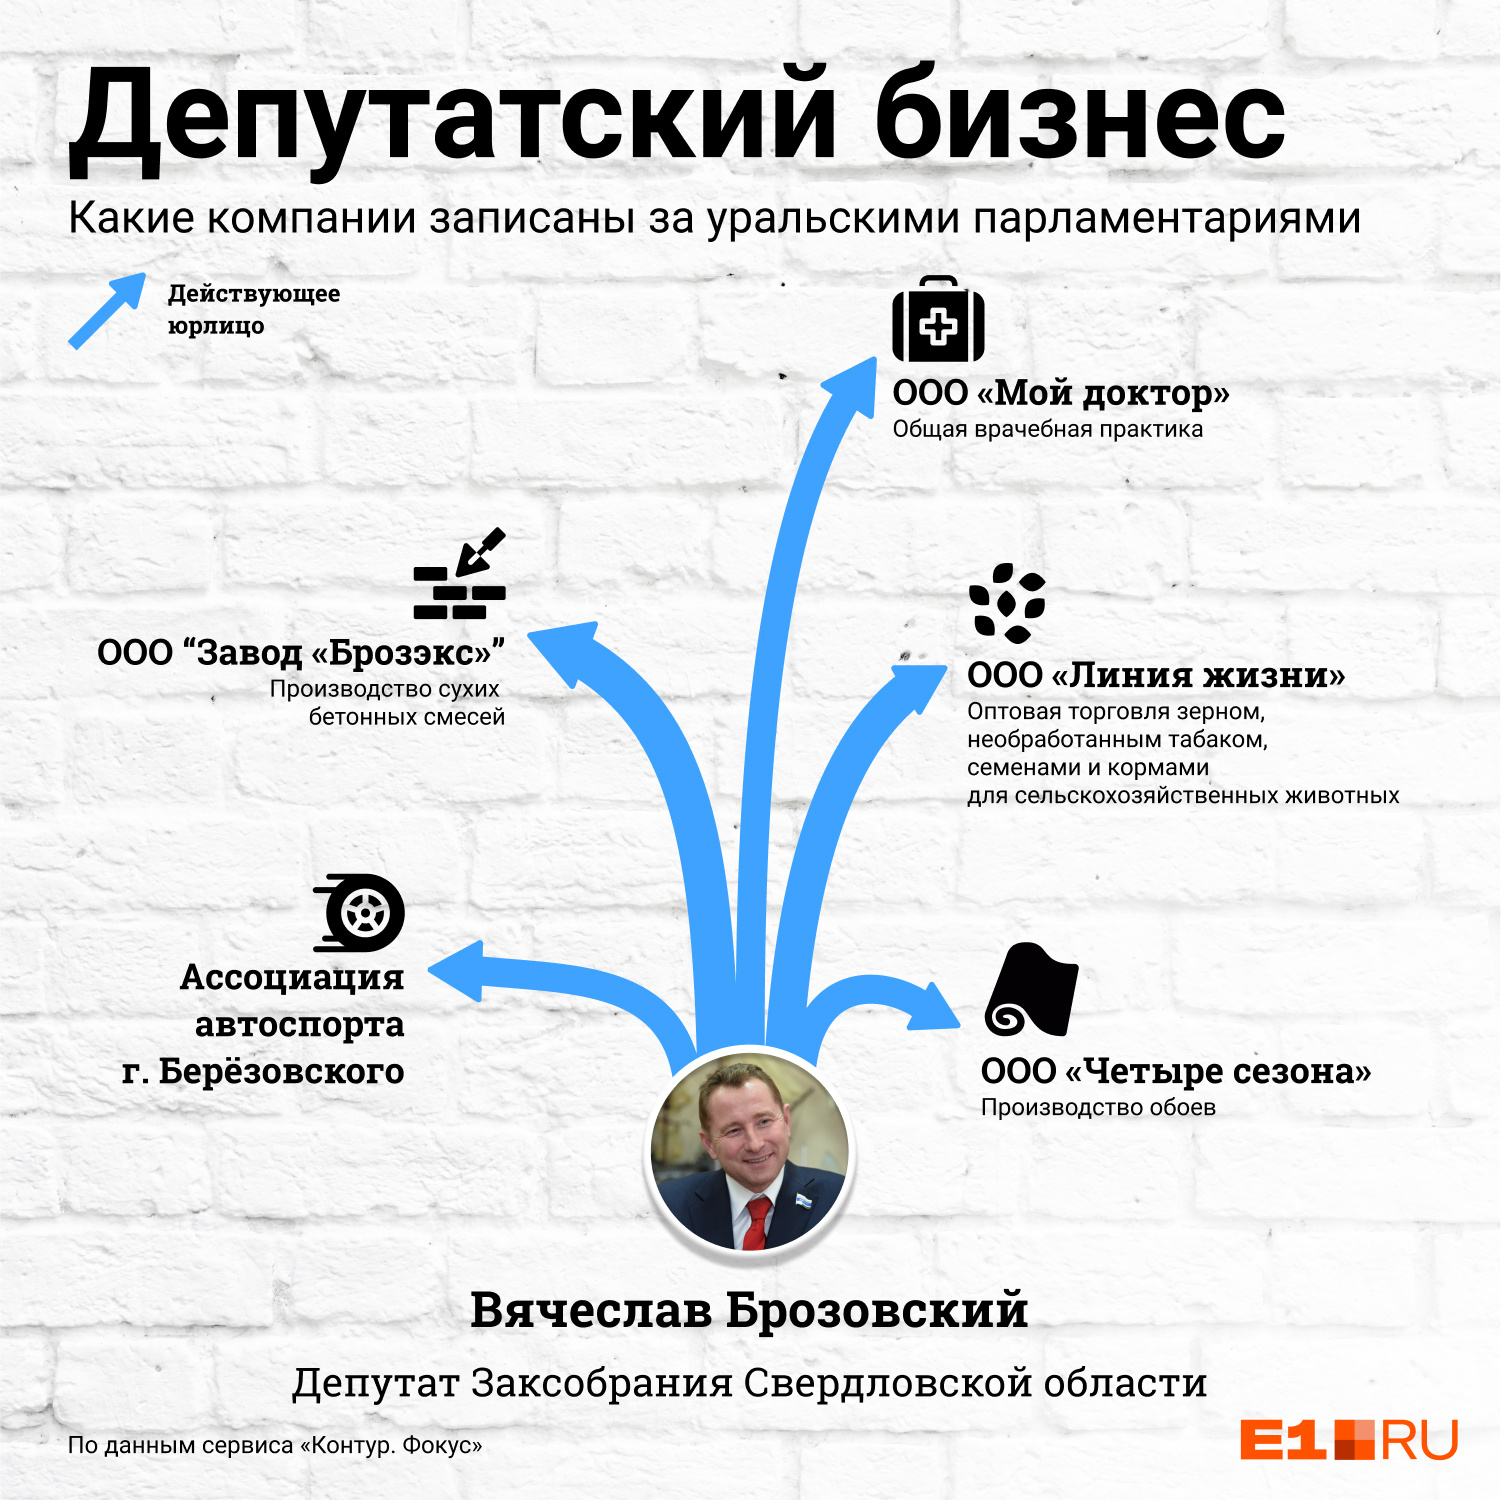 Вячеслав Брозовский — один из самых состоятельных депутатов Законодательного собрания